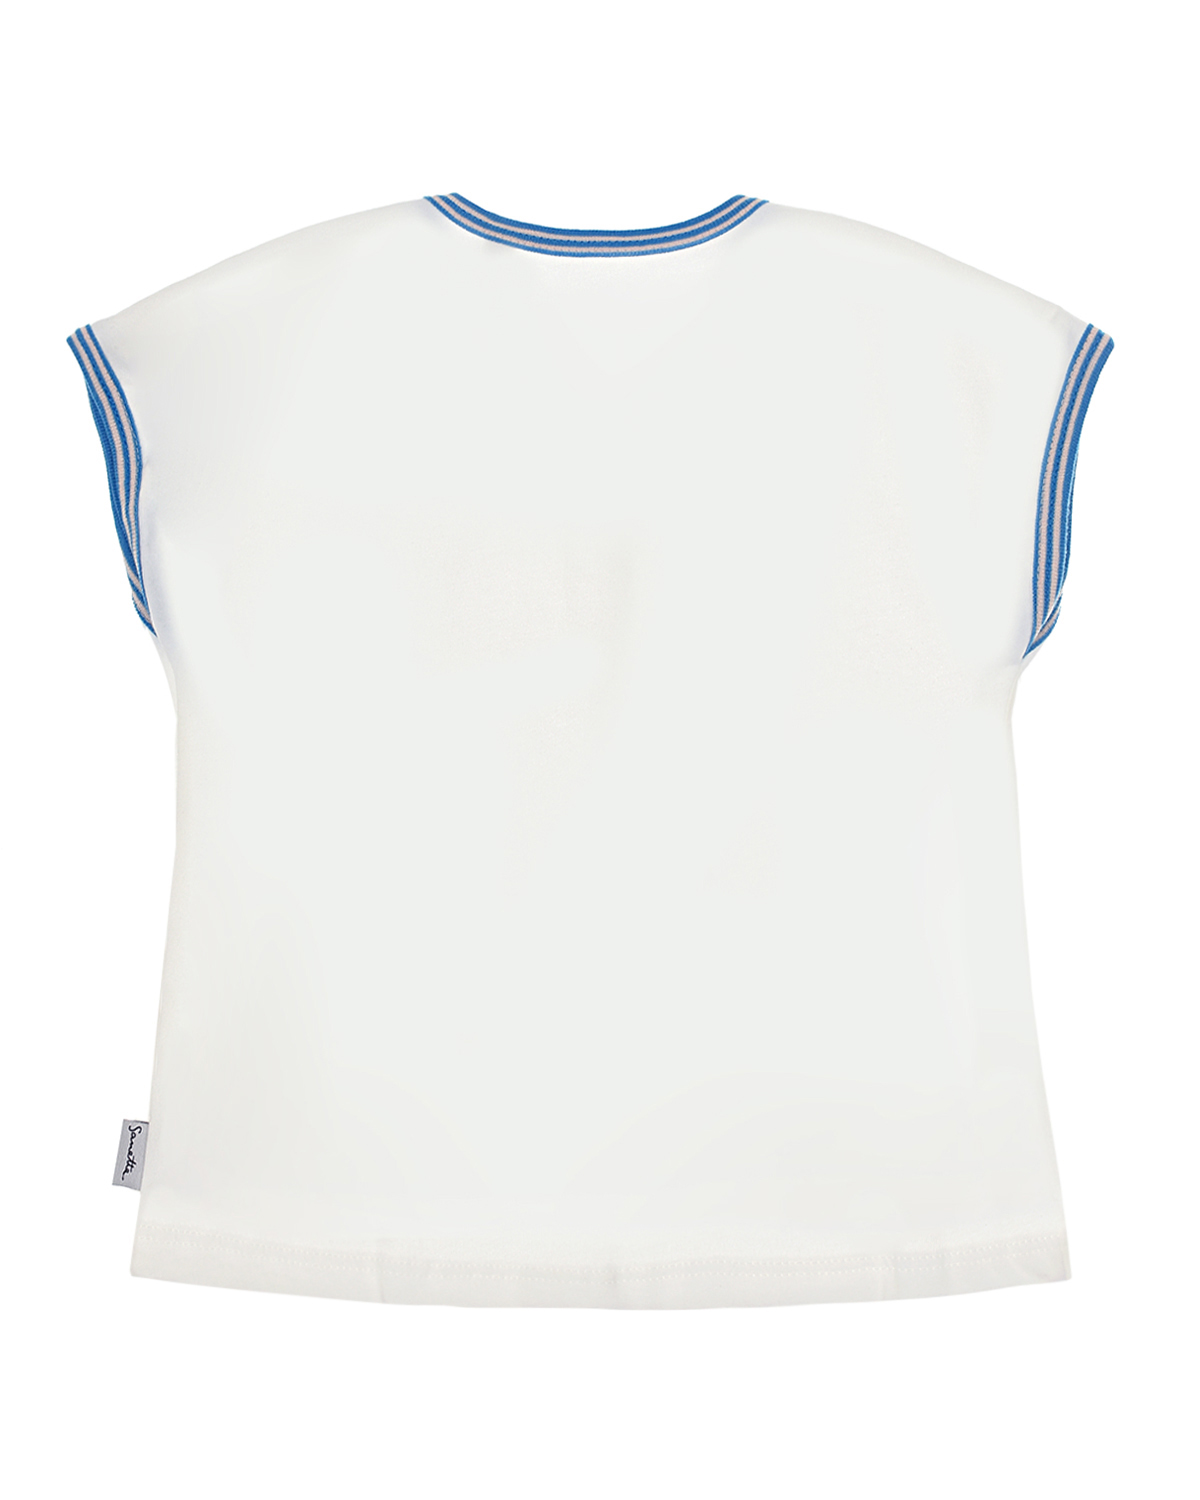 Белая футболка с принтом "рыбы" Sanetta Kidswear детская, размер 68, цвет кремовый - фото 2